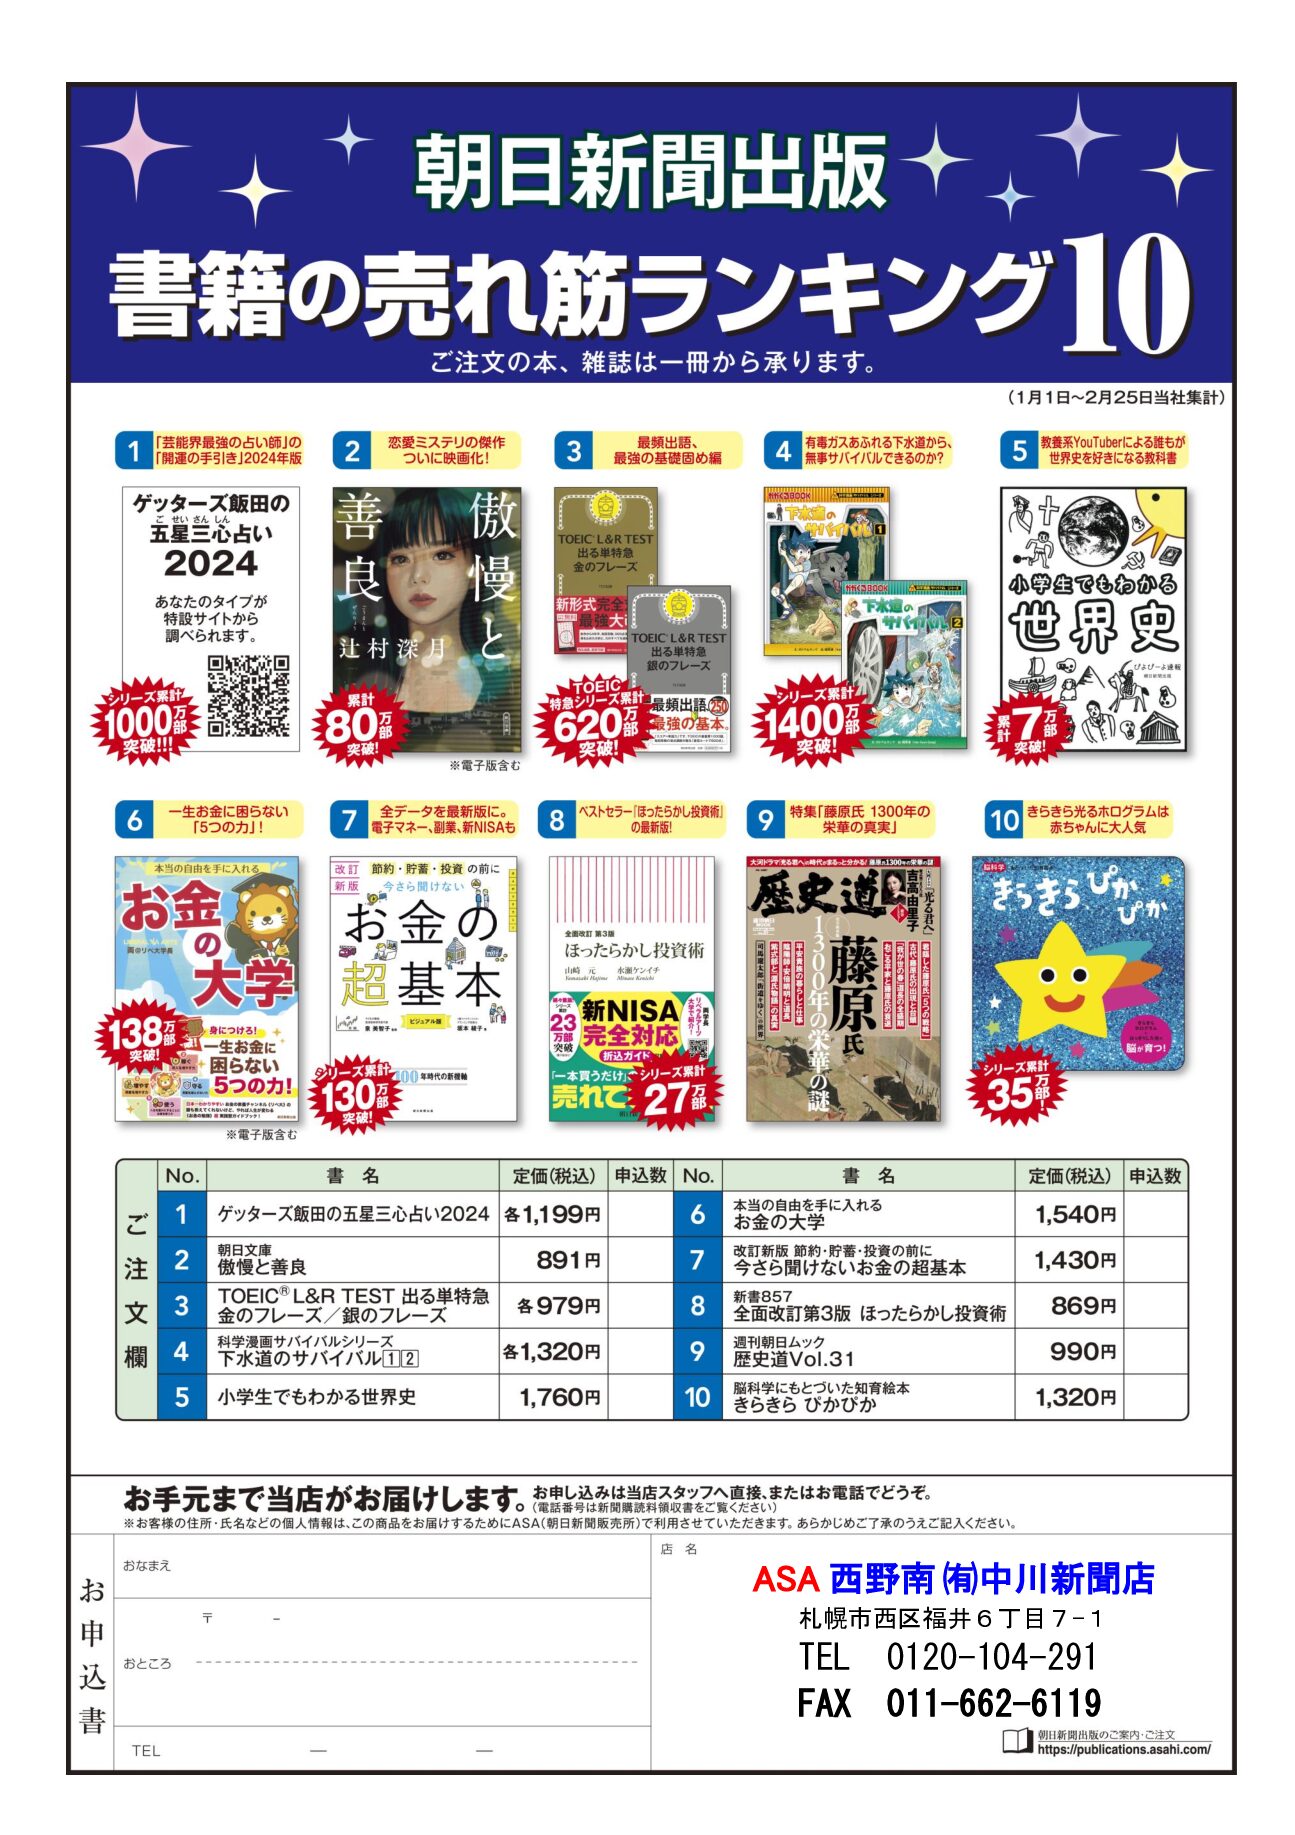 朝日新聞出版 書箱の売れ筋ランキング10 3月